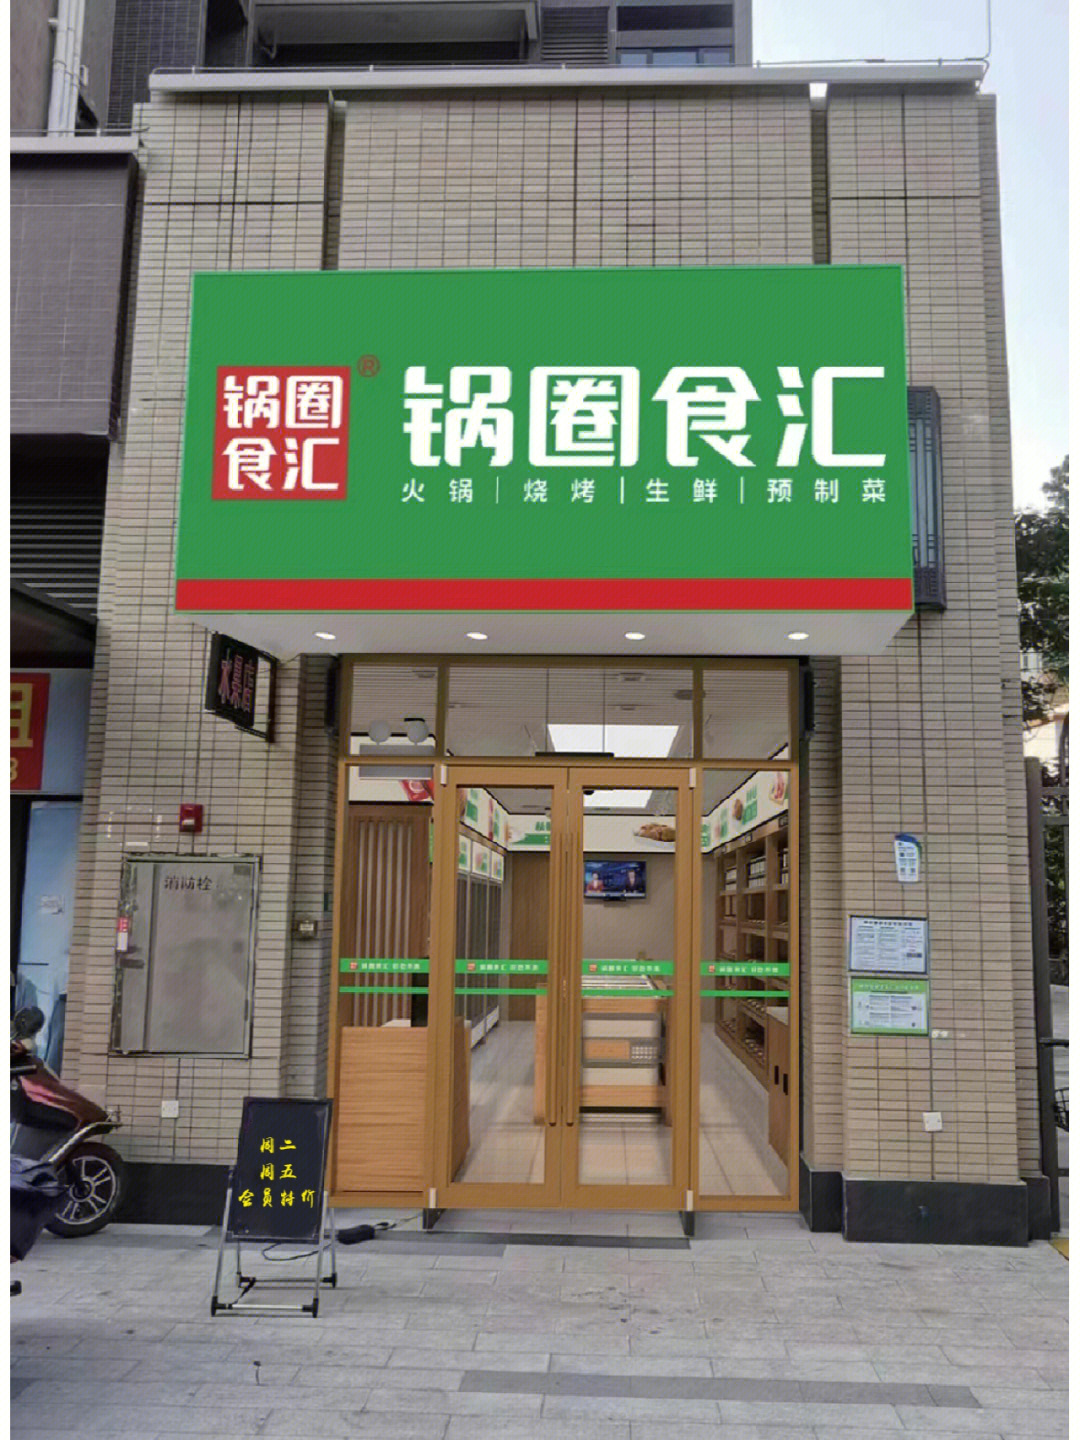 锅圈食汇广州南沙时代长岛店正式试营业